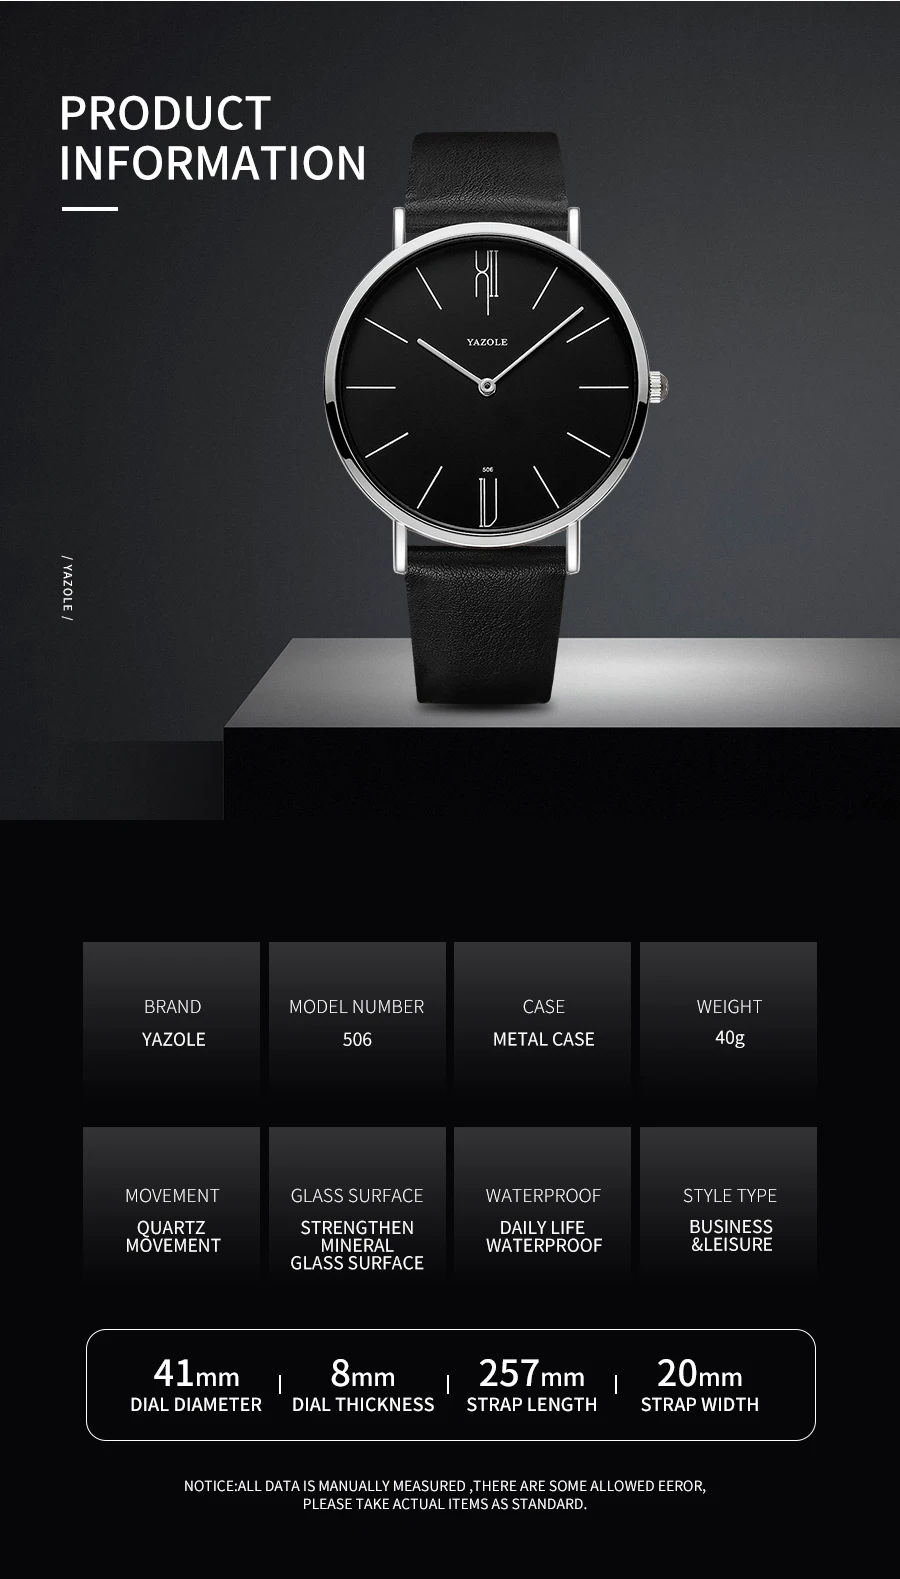 Reloj Yazole Watch Men Waterproof Ultra Thin Quartz Watch For Men Fashion Simple Black Men Watch Male Wristwatch Montre Homme